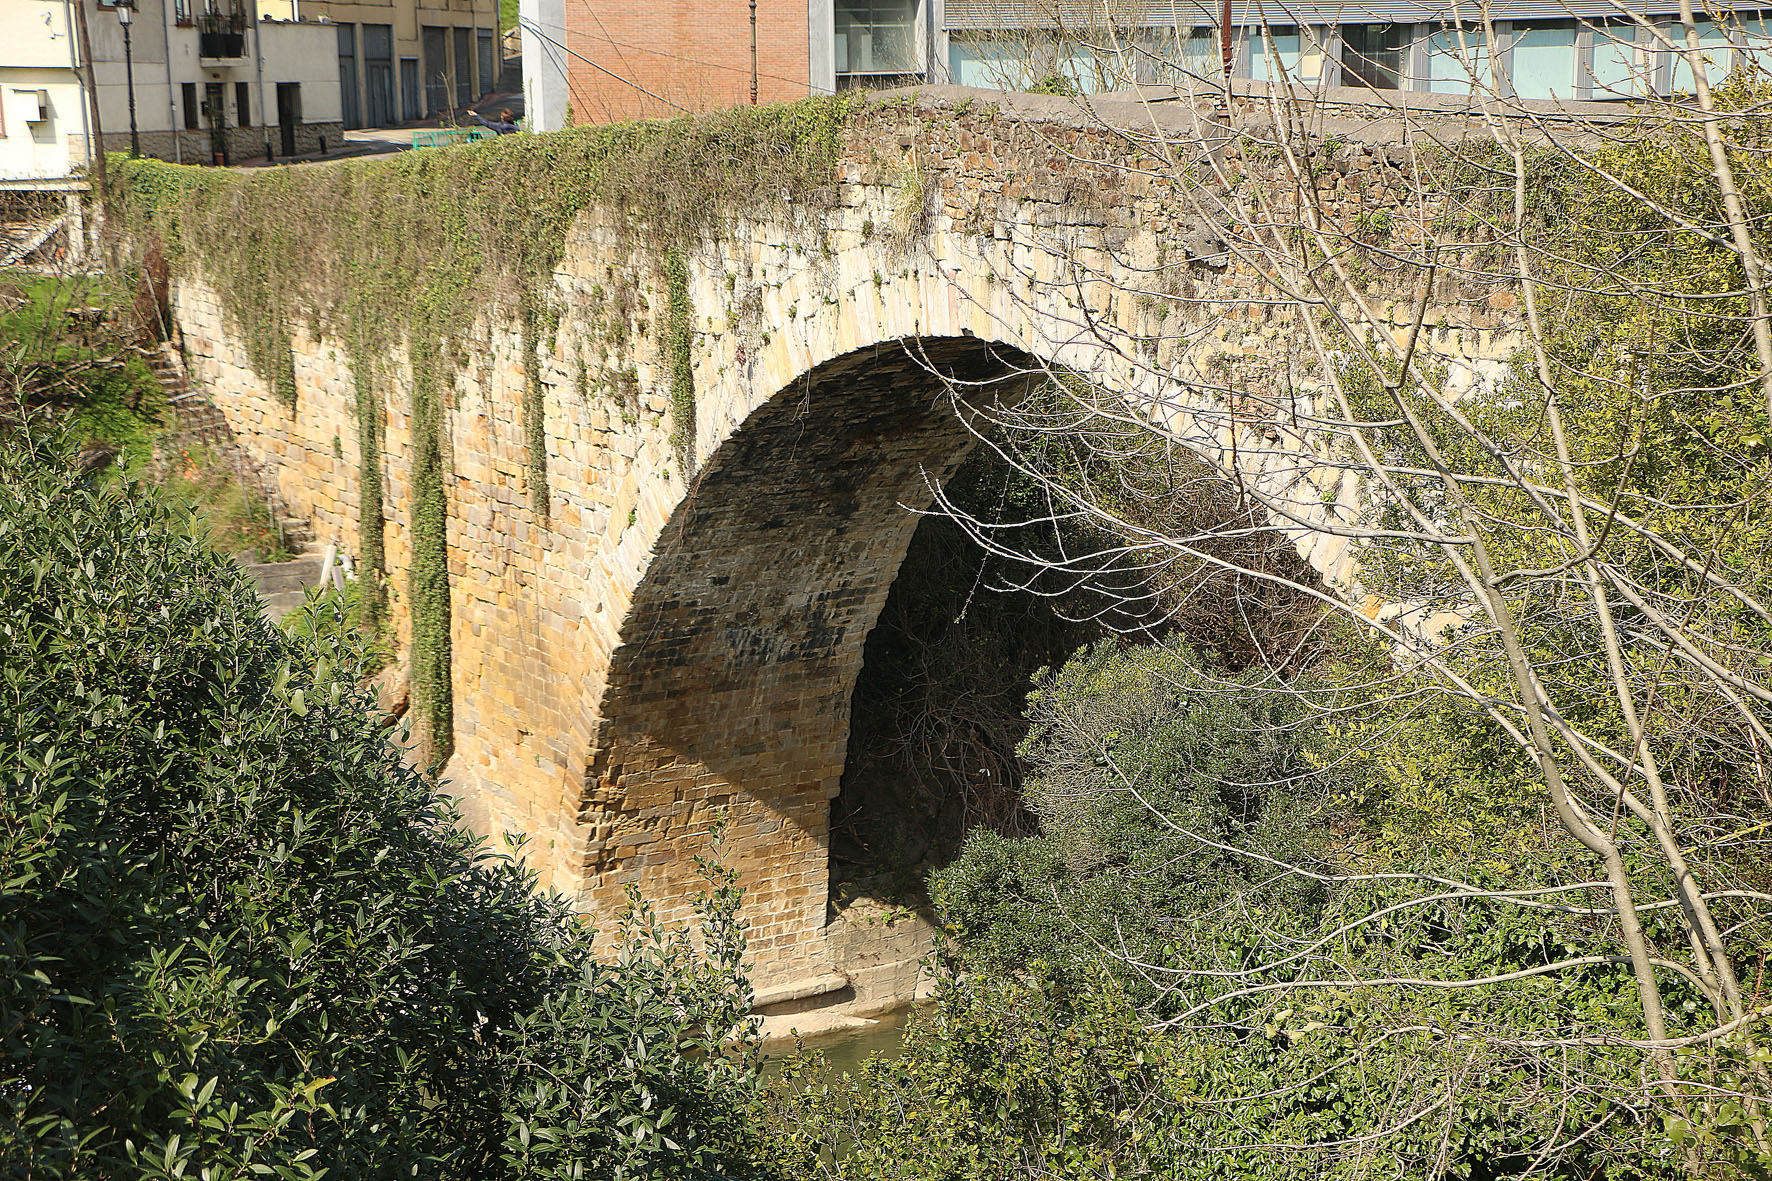 Devil’s Bridge in Castrejana (Bizkaia). José Ignacio García